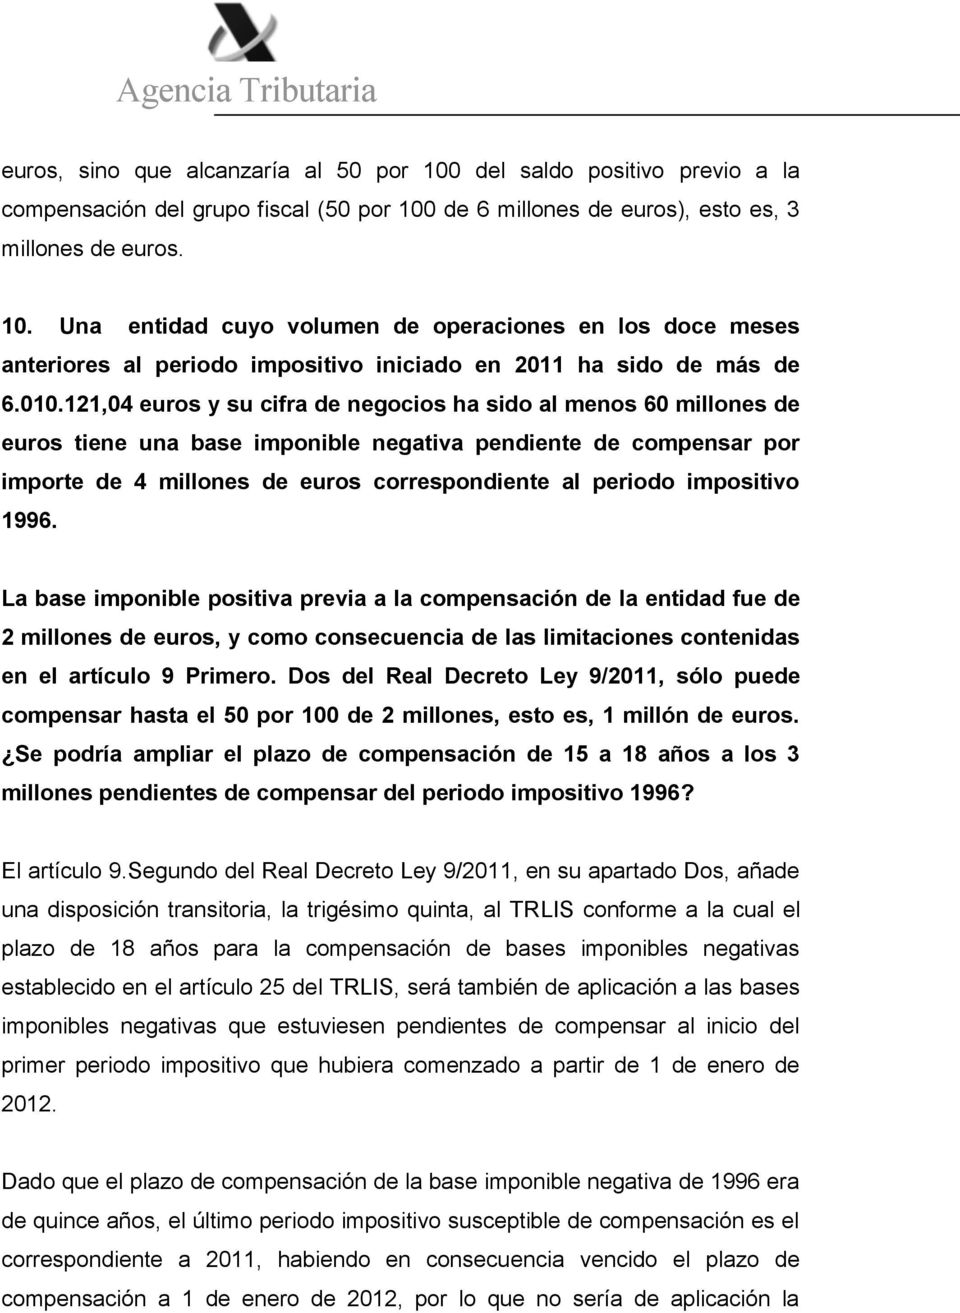 impositivo 1996. La base imponible positiva previa a la compensación de la entidad fue de 2 millones de euros, y como consecuencia de las limitaciones contenidas en el artículo 9 Primero.